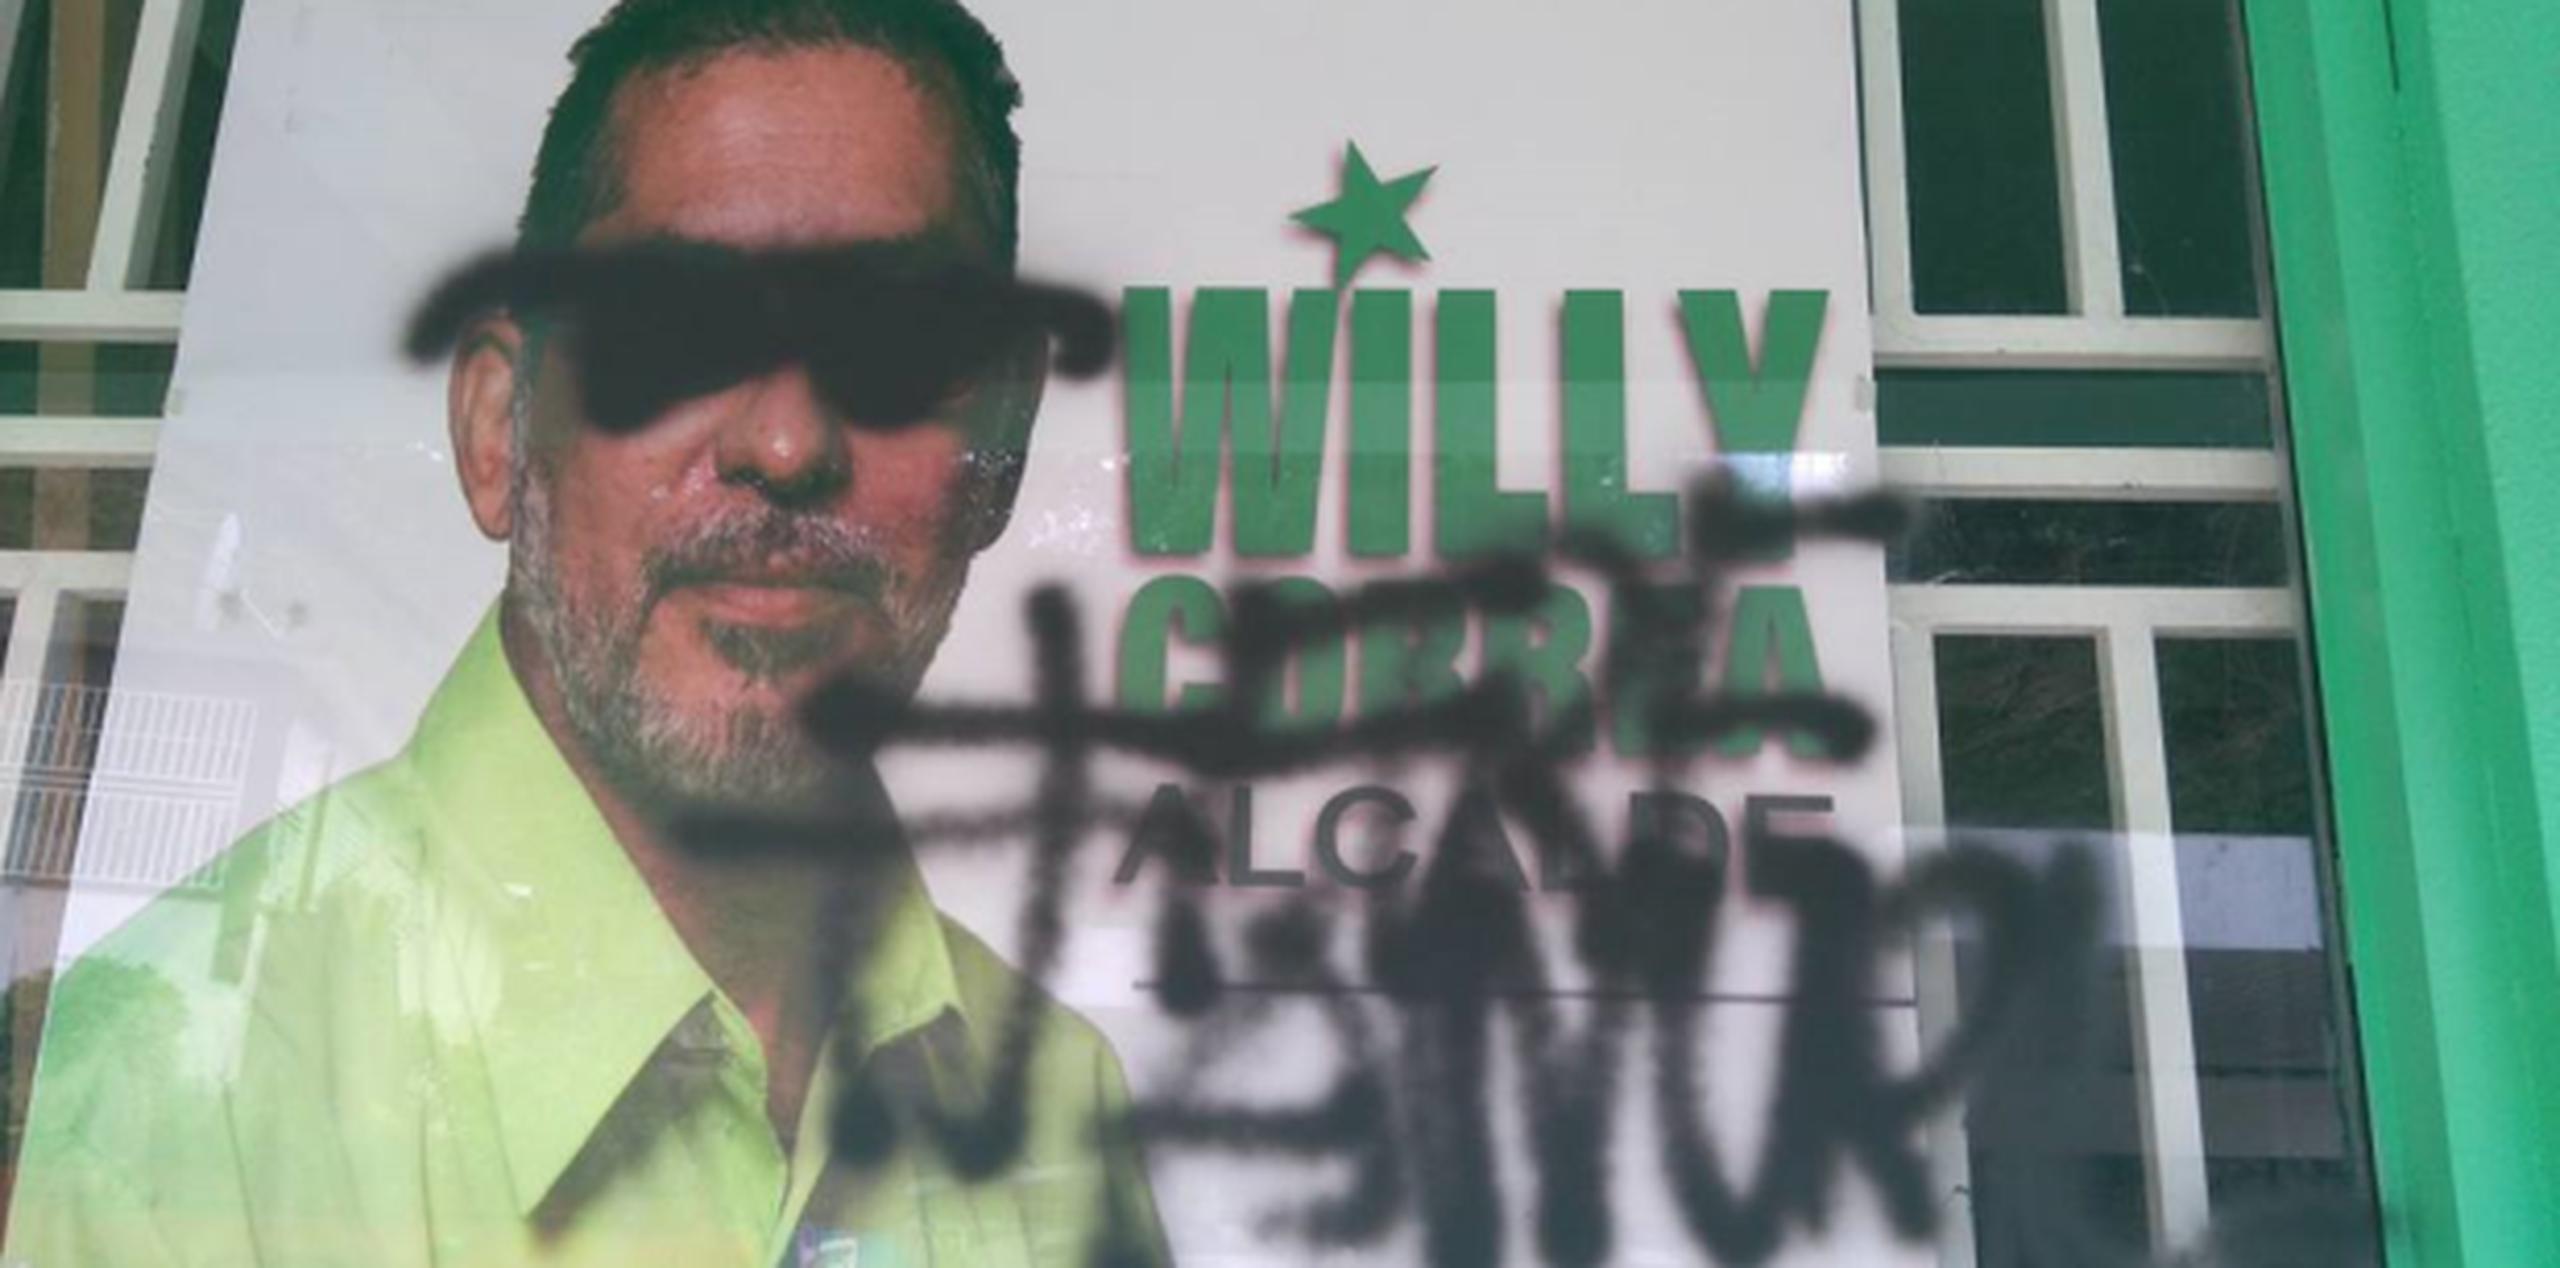 En las imágenes provistas por el líder de la Pava del conocido “pueblo de los changos”, se puede ver cómo la propaganda del independentista, Willy Correa fue dañada con “spray” negro. (Suministrada)